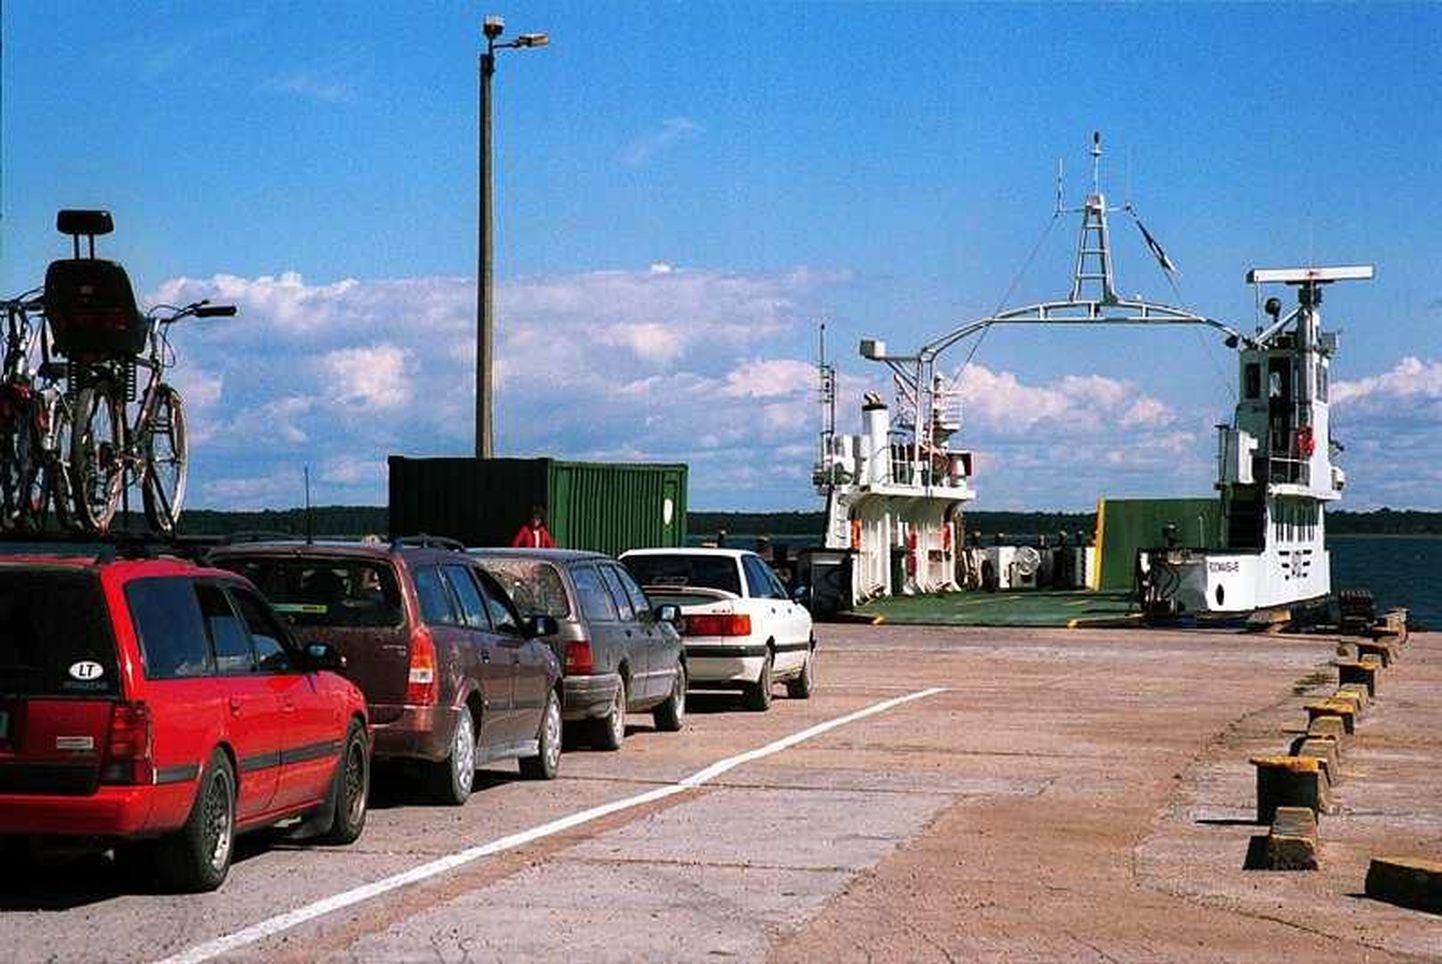 Pildil ootavad autod järjekorras pääsu praamile Vardo, mis viis turistid Saaremaalt Triigi sadamast Hiiumaale Sõru sadamasse. Foto on tehtud kuus aastat tagasi.